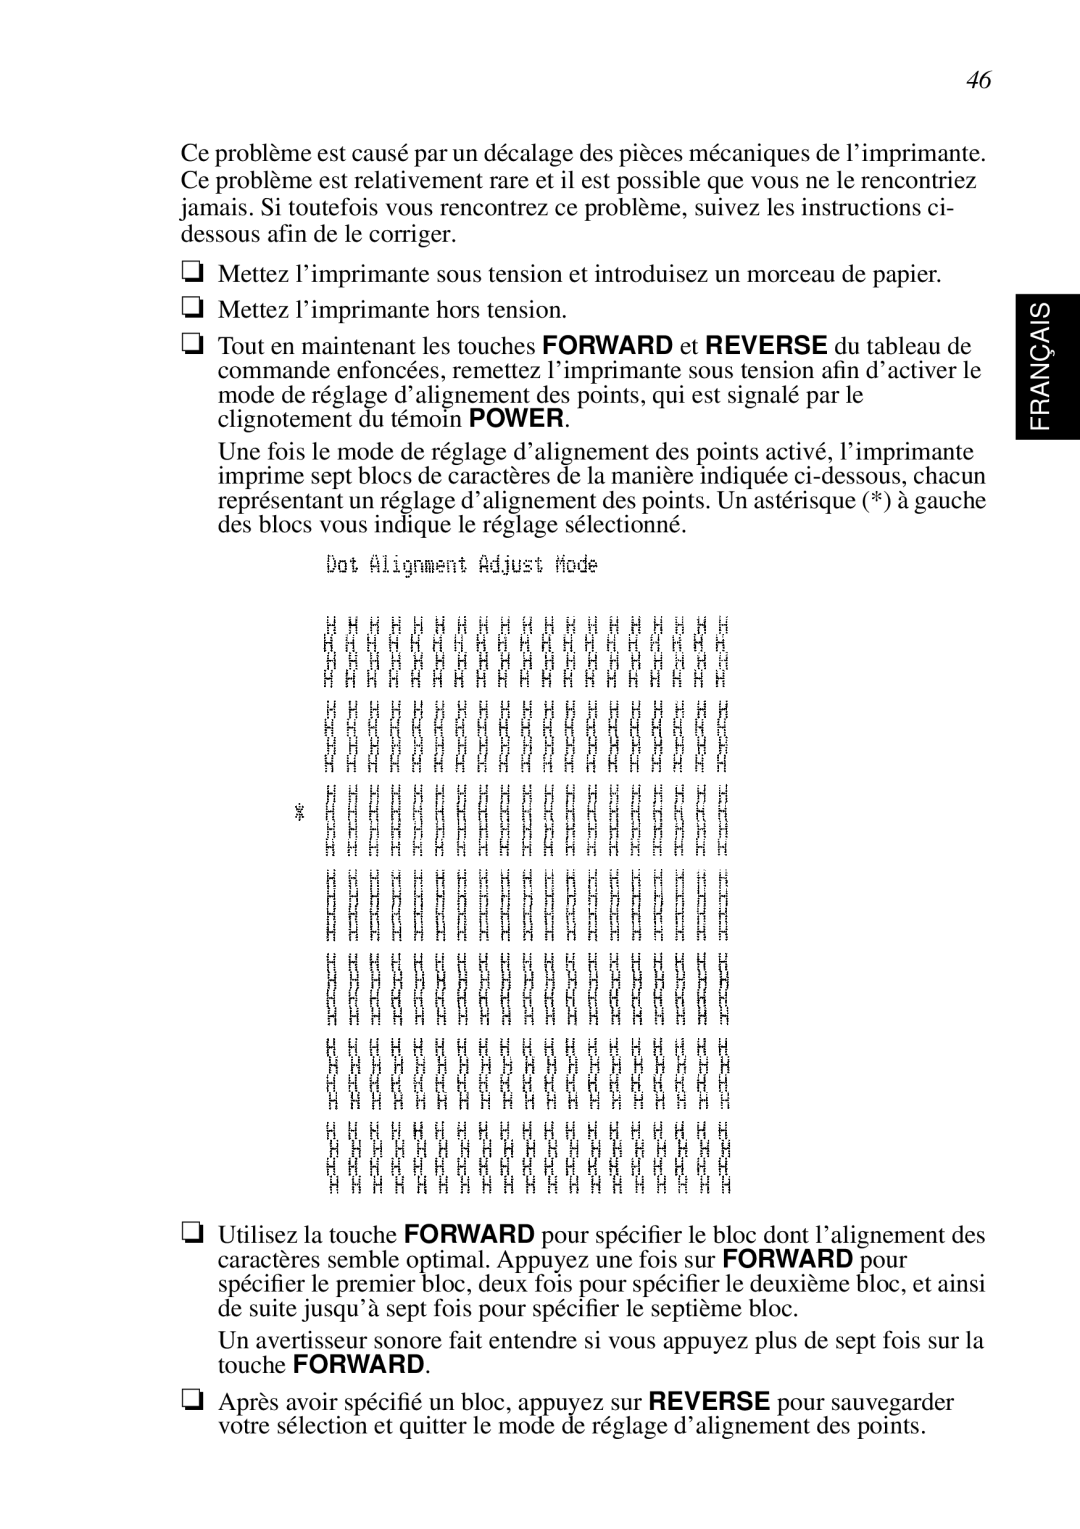 Star Micronics SP298 user manual Mettez l’imprimante sous tension et introduisez un morceau de papier, Français 